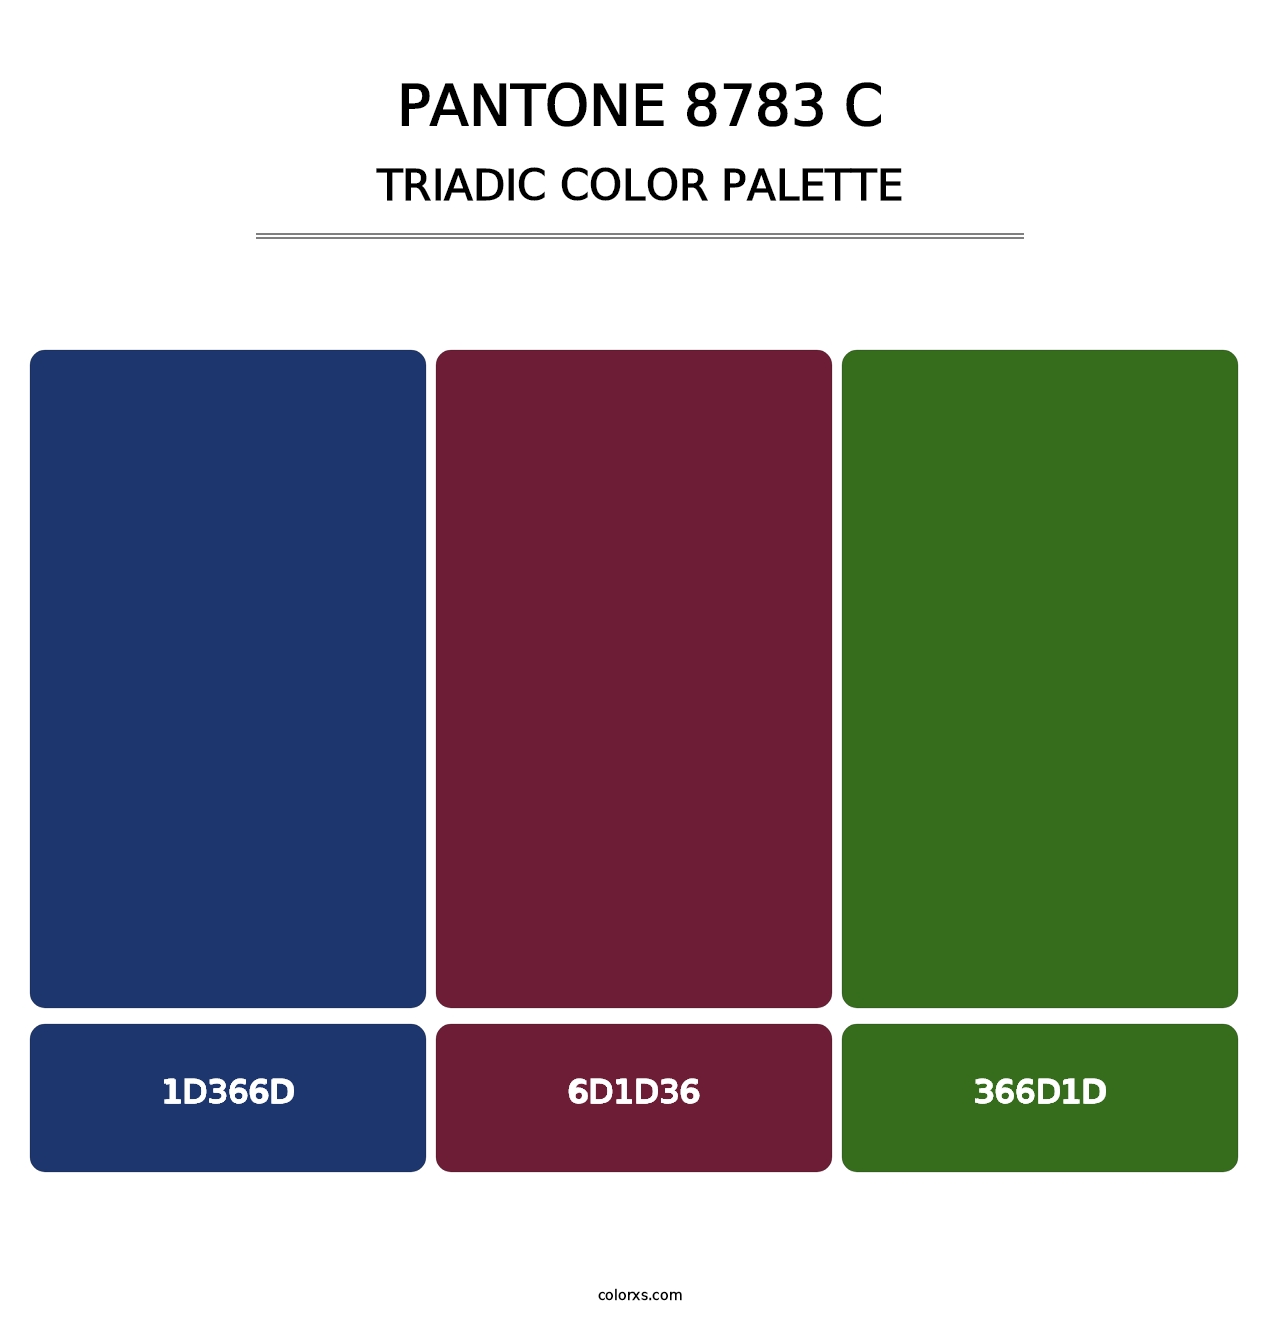 PANTONE 8783 C - Triadic Color Palette